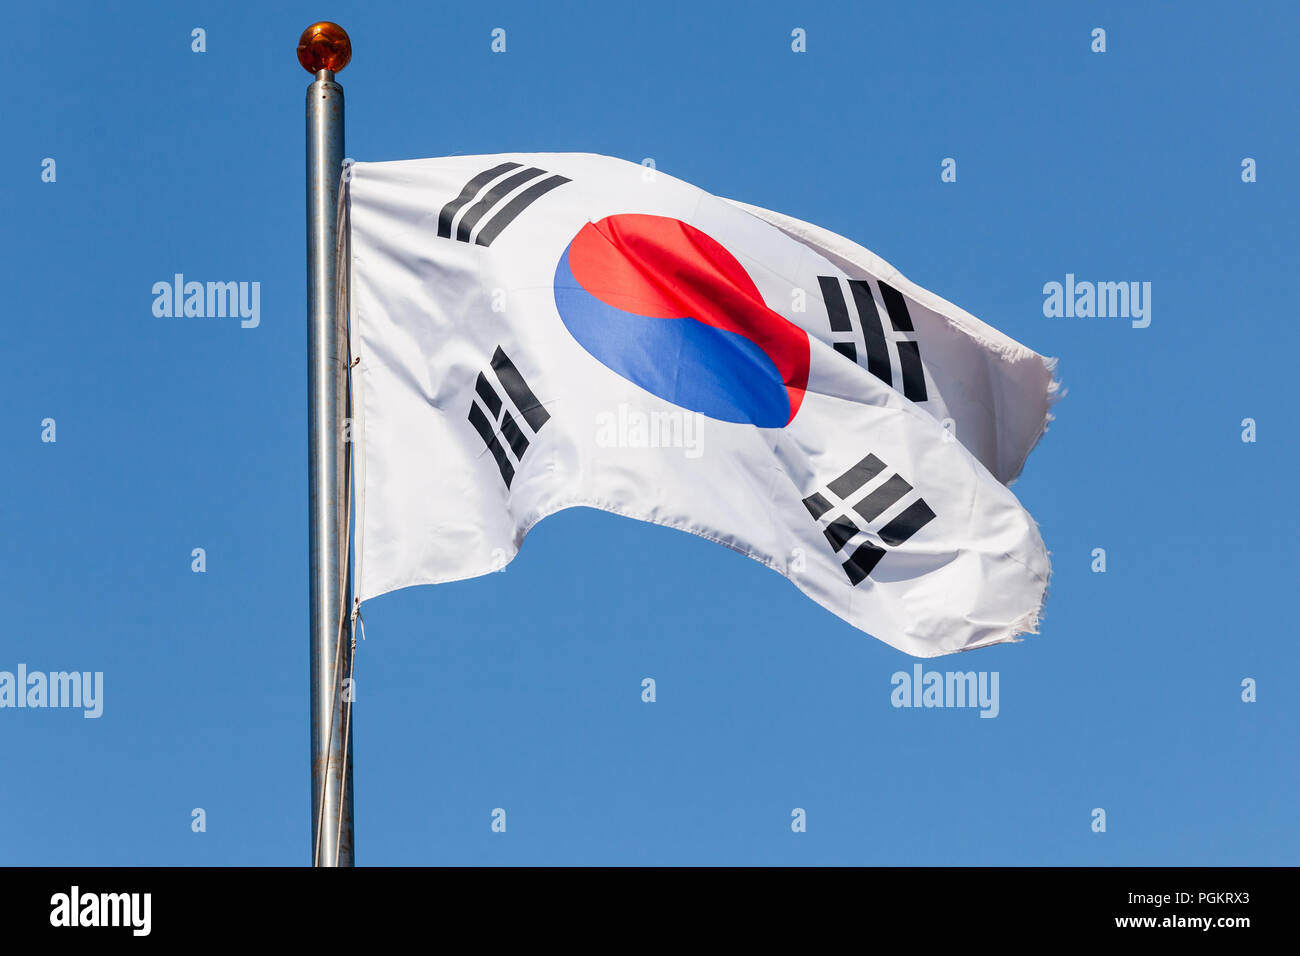 Drapeau de la Corée du Sud sur un mât agitant Taegukgi Banque D'Images